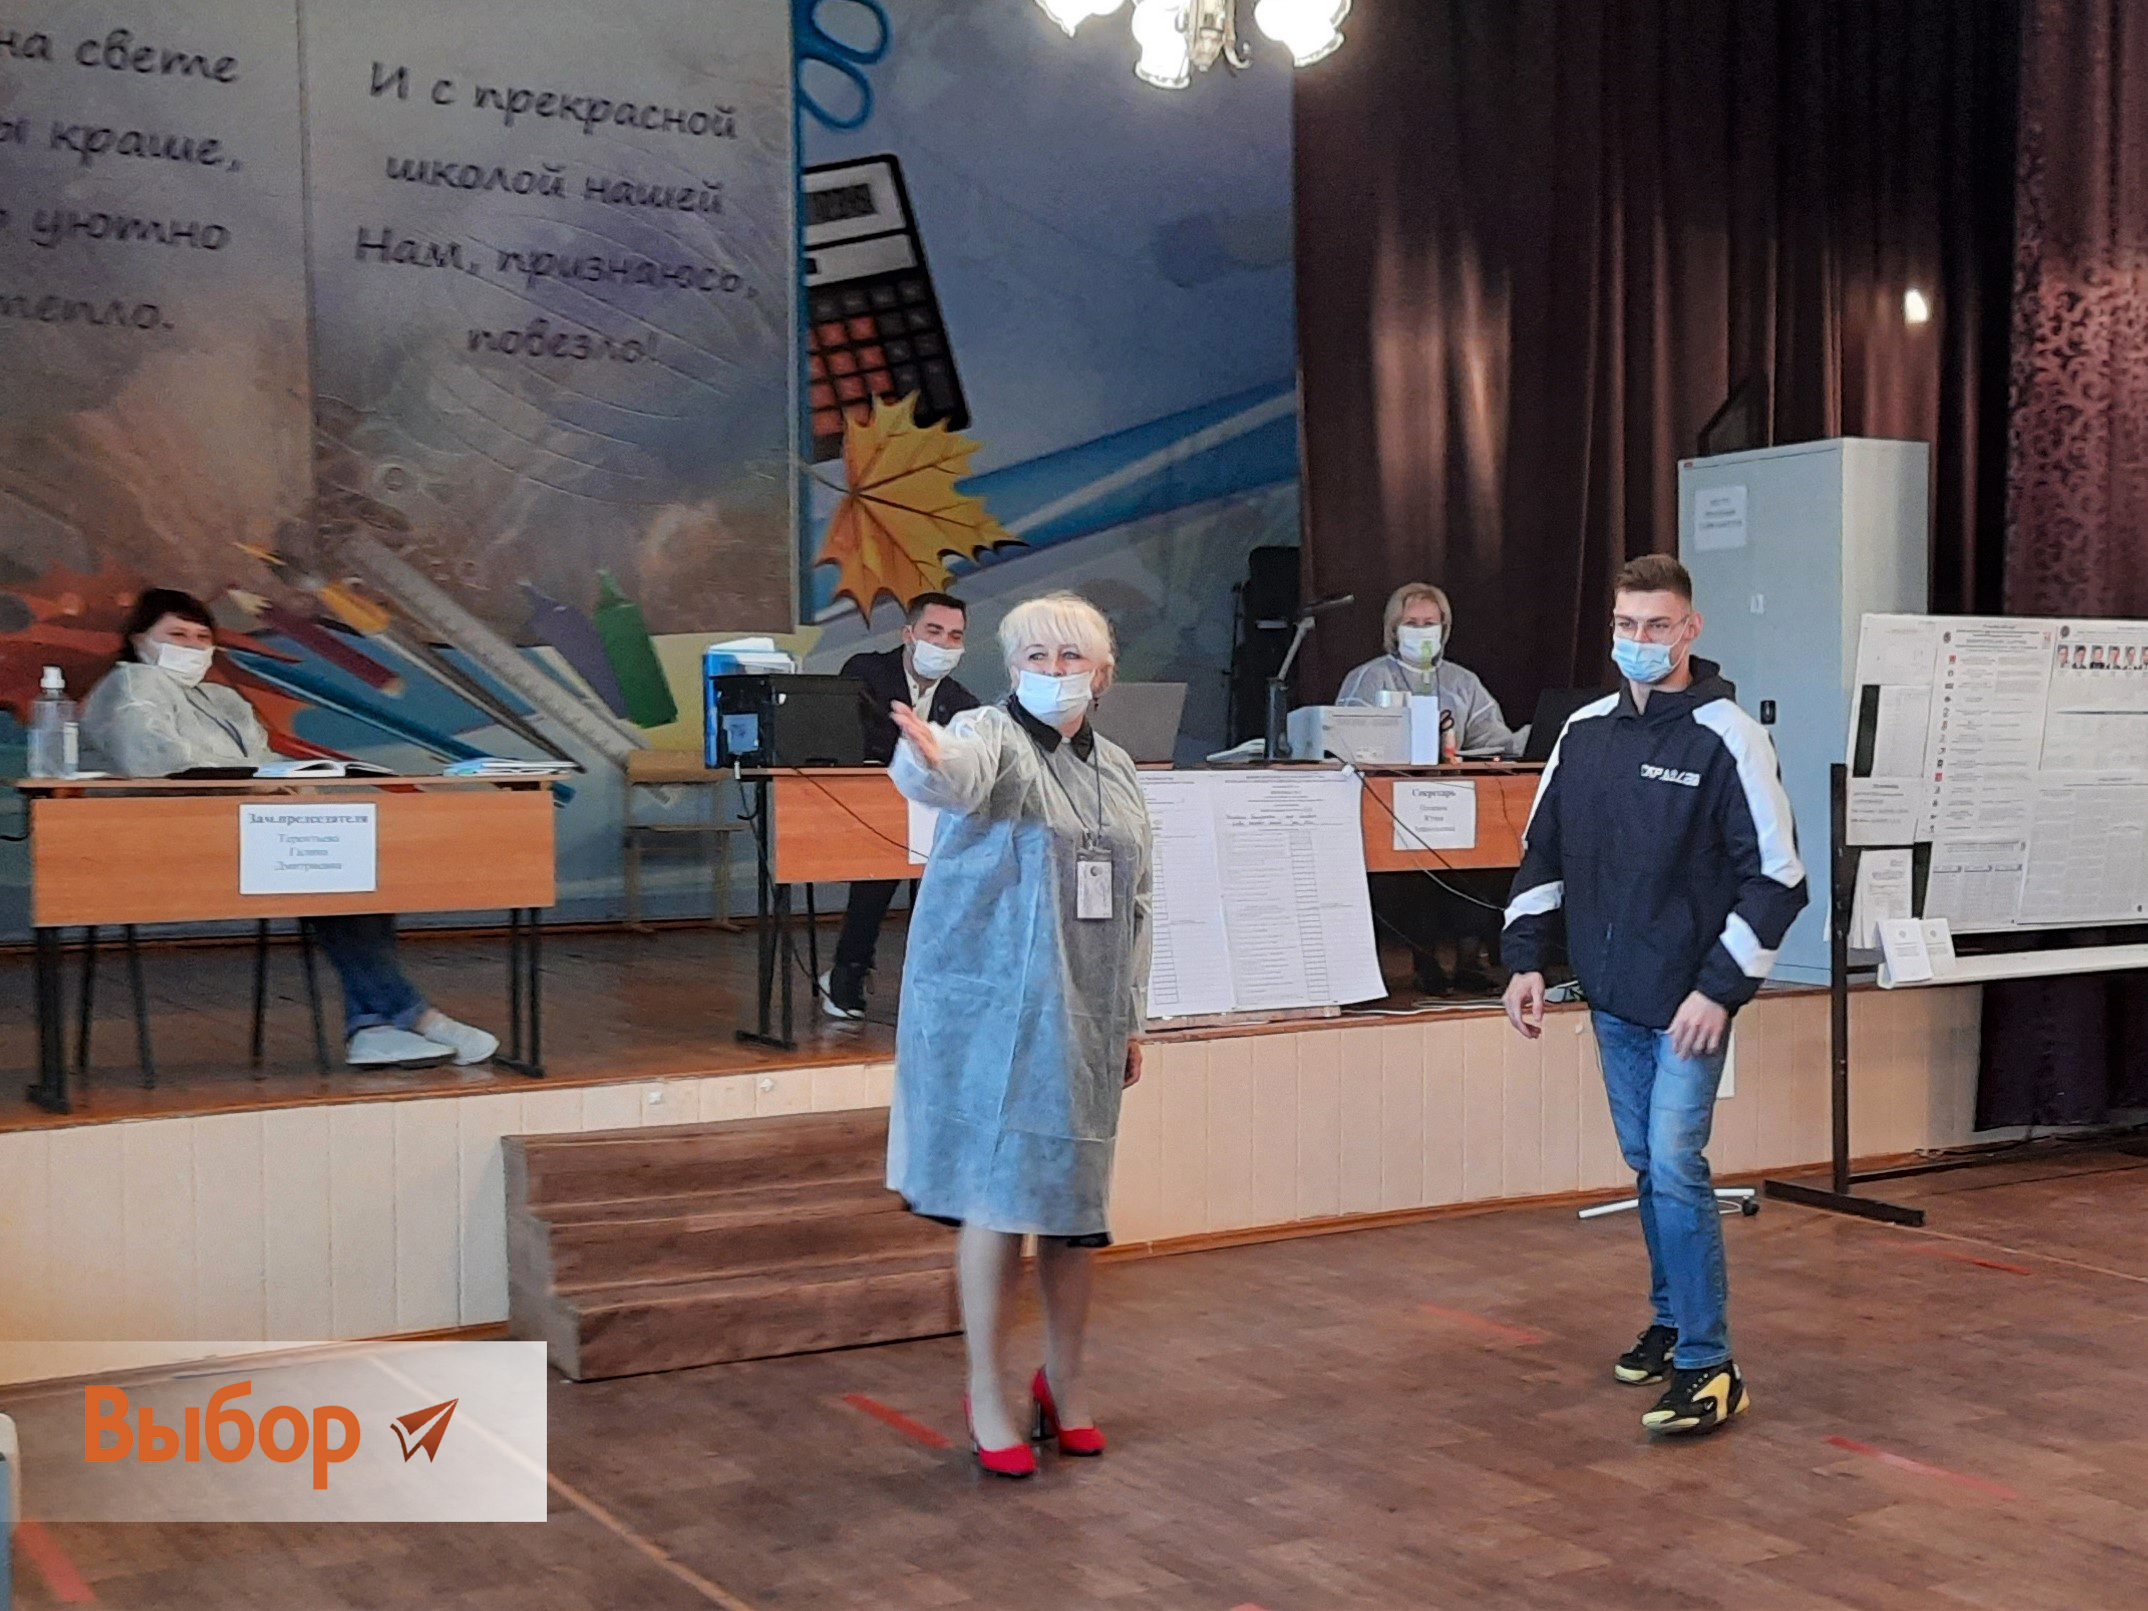 Двукратный паралимпийский чемпион Андрей Николаев: "Идем на выборы, чтобы проголосовать за тех, кому доверим будущее страны"